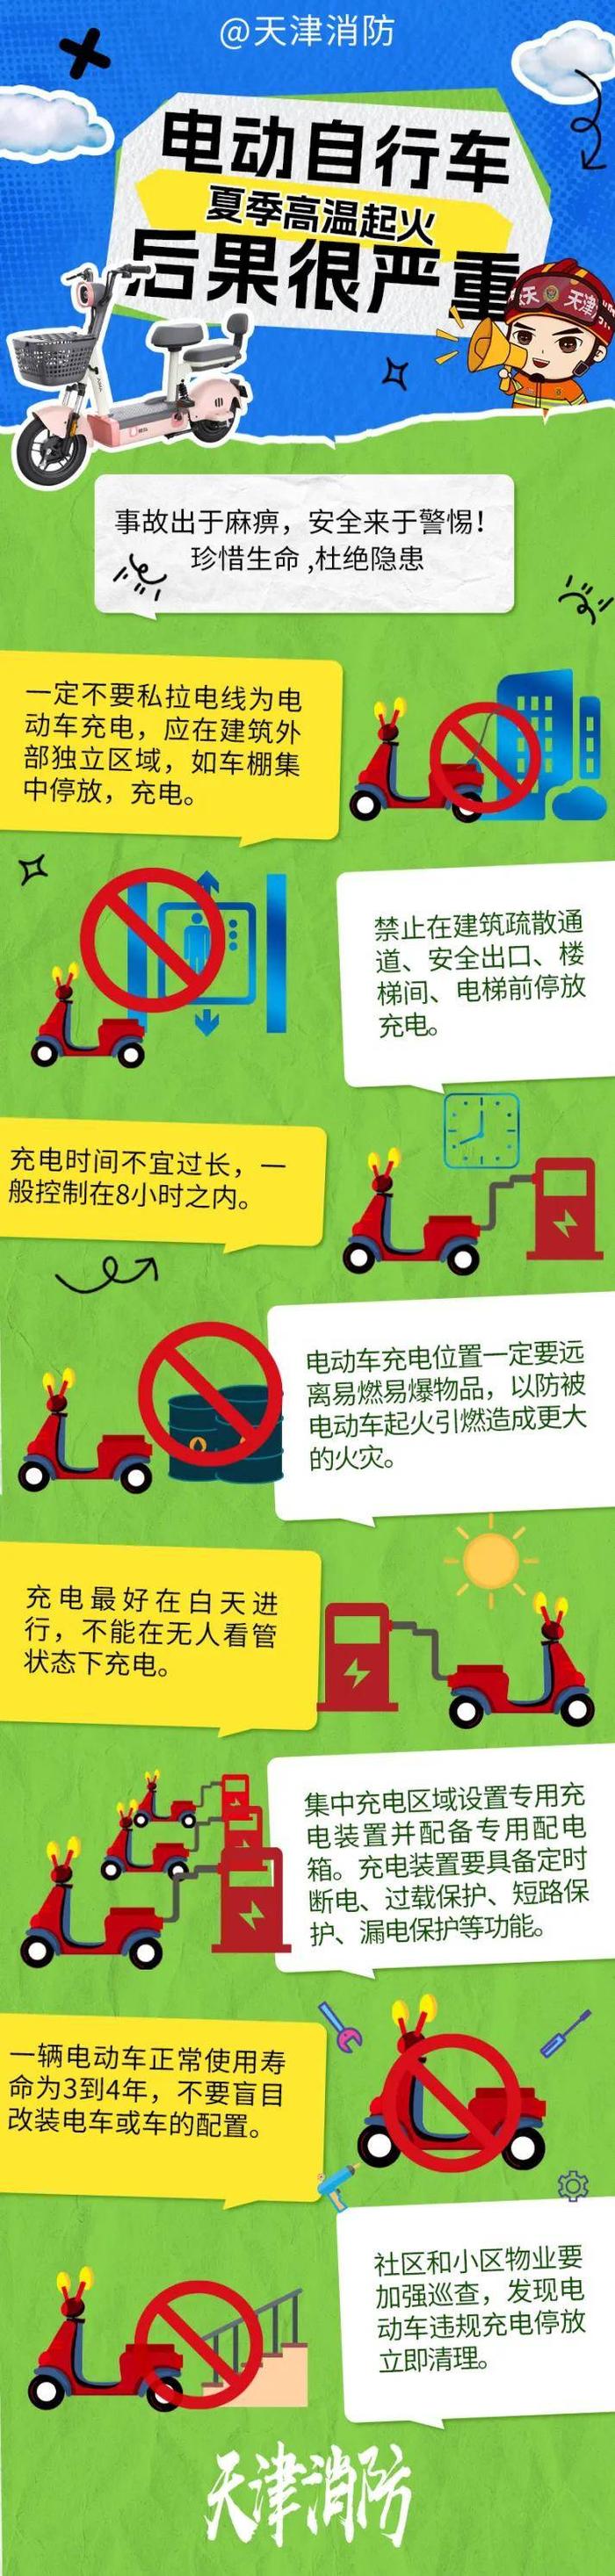 天津:电动自行车夏季高温起火后果很严重